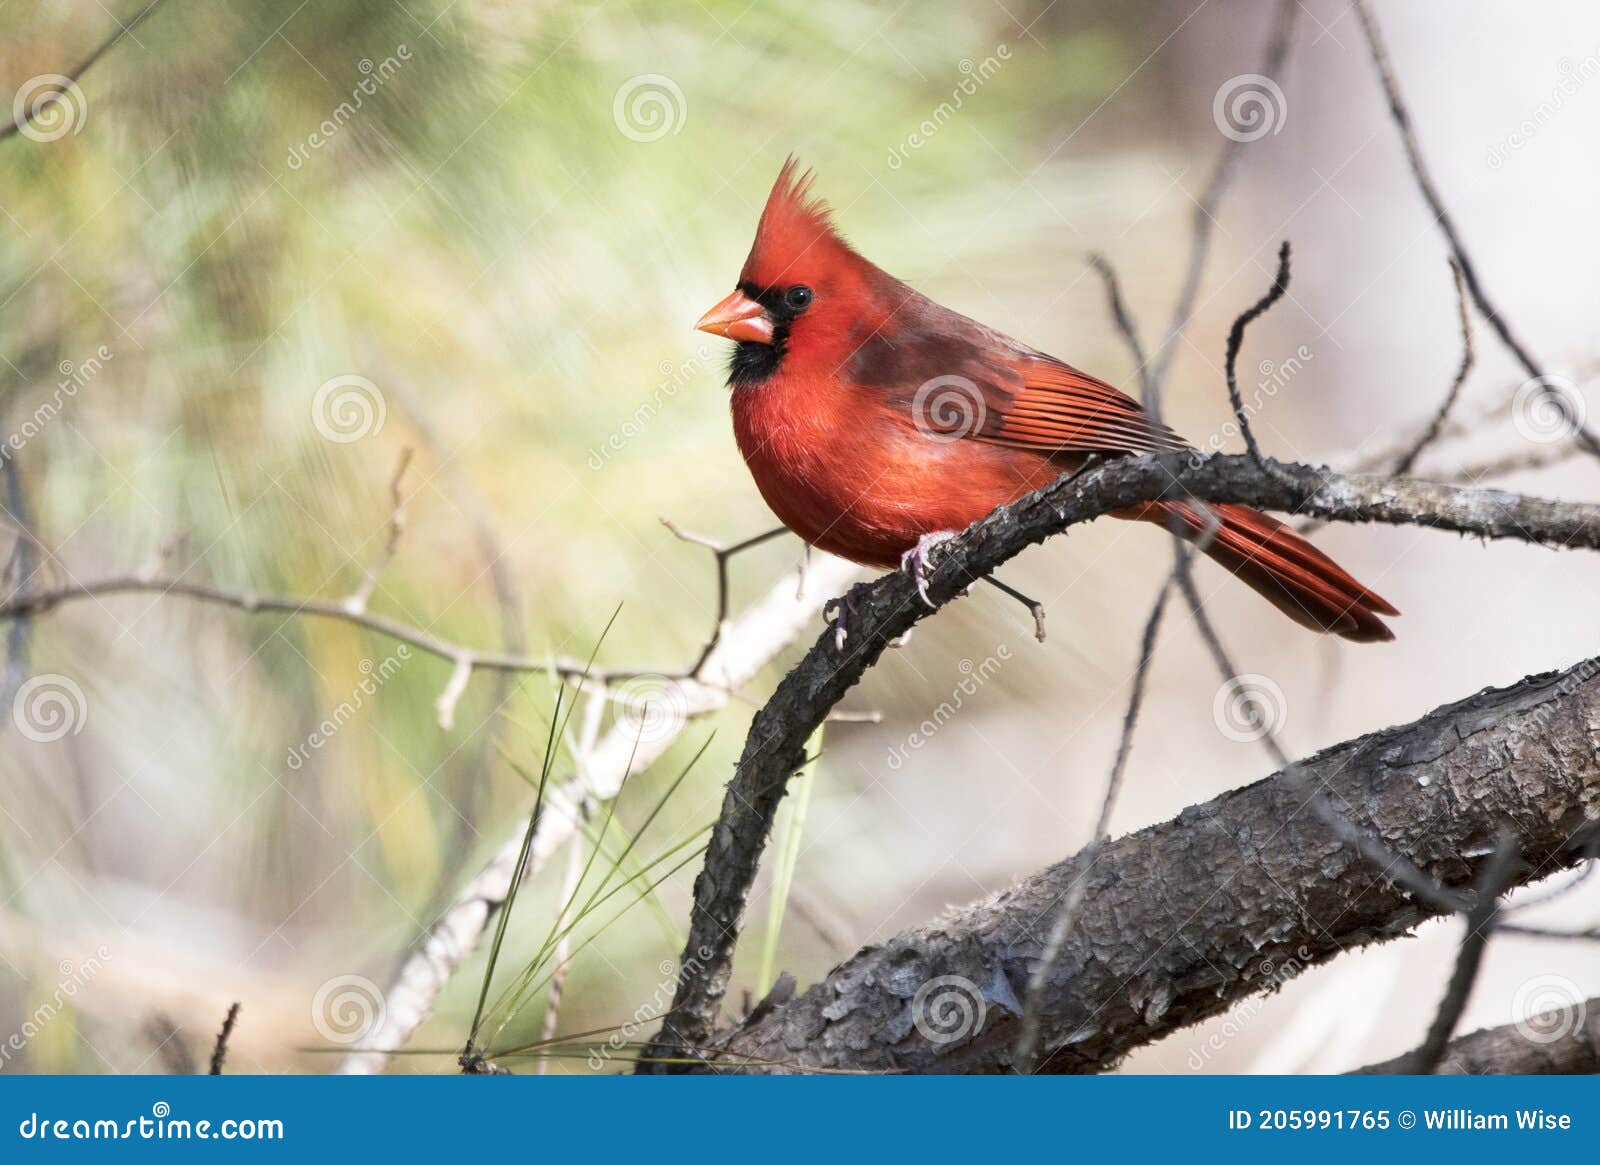 Rode mannelijke noordelijke kardinaal vogel die op een pijnboomtak zit